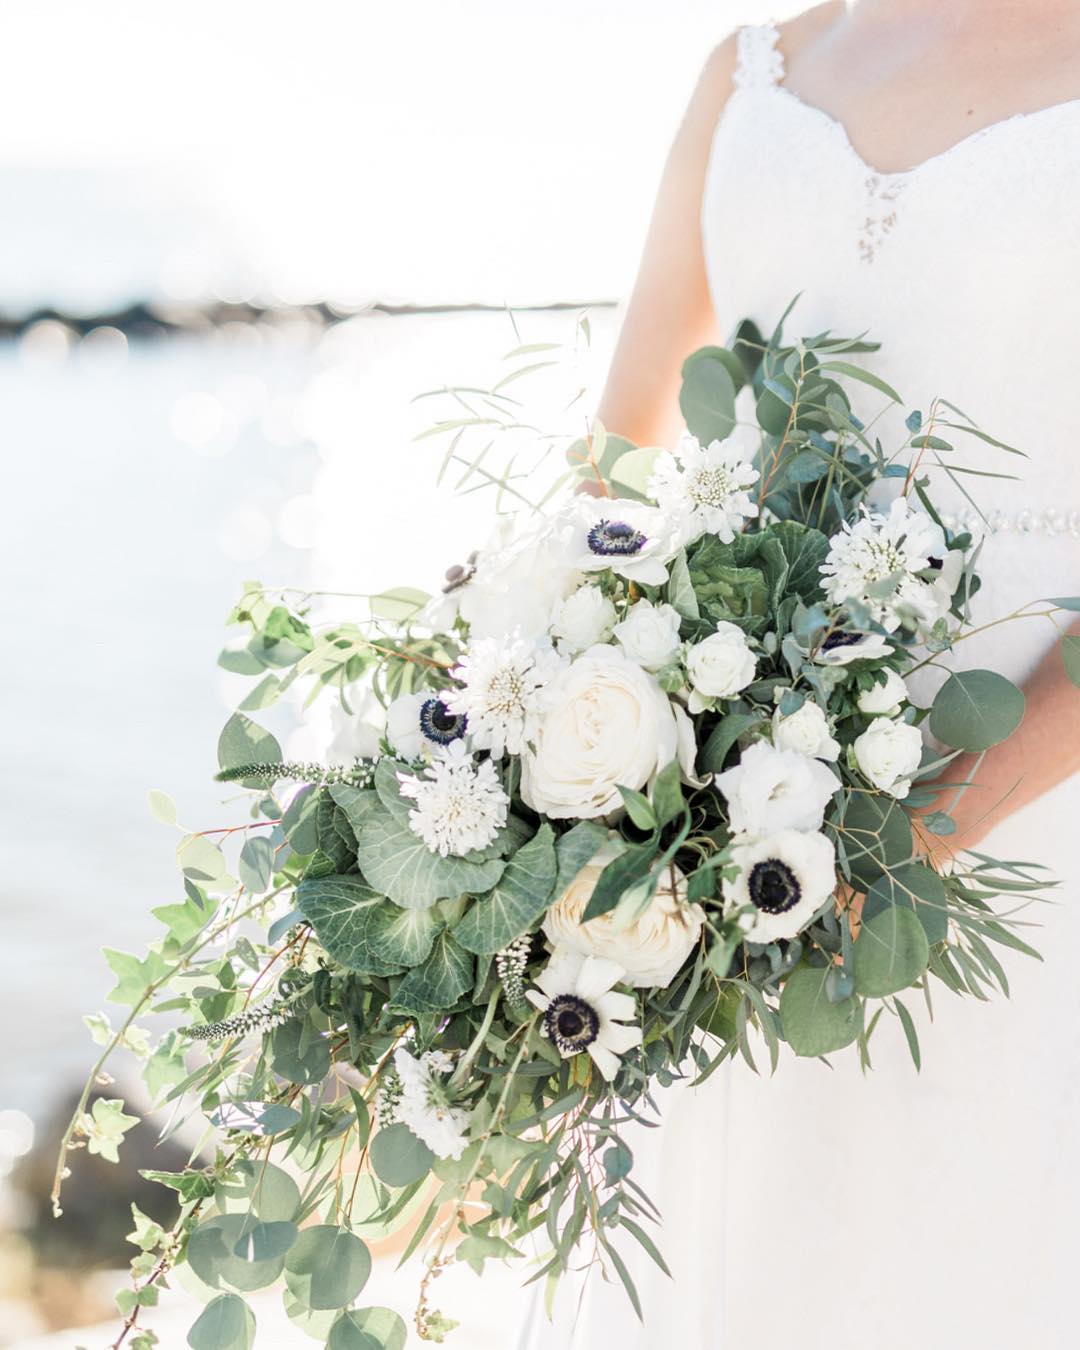 Невеста держит авторский букет с белыми цветами и зелеными листьями.